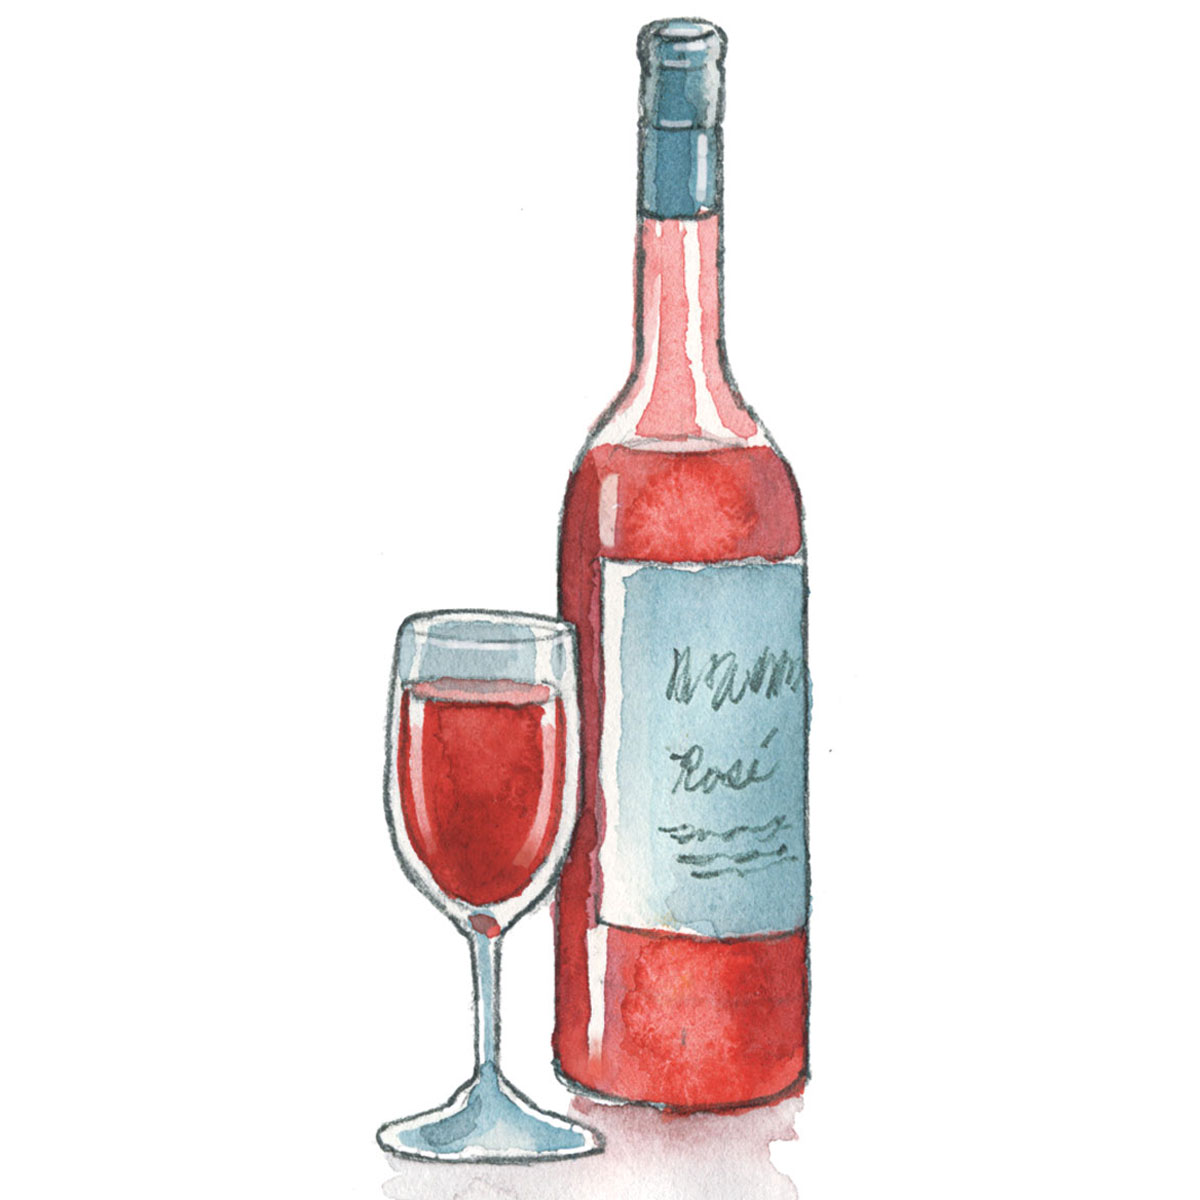 winter rosé wine